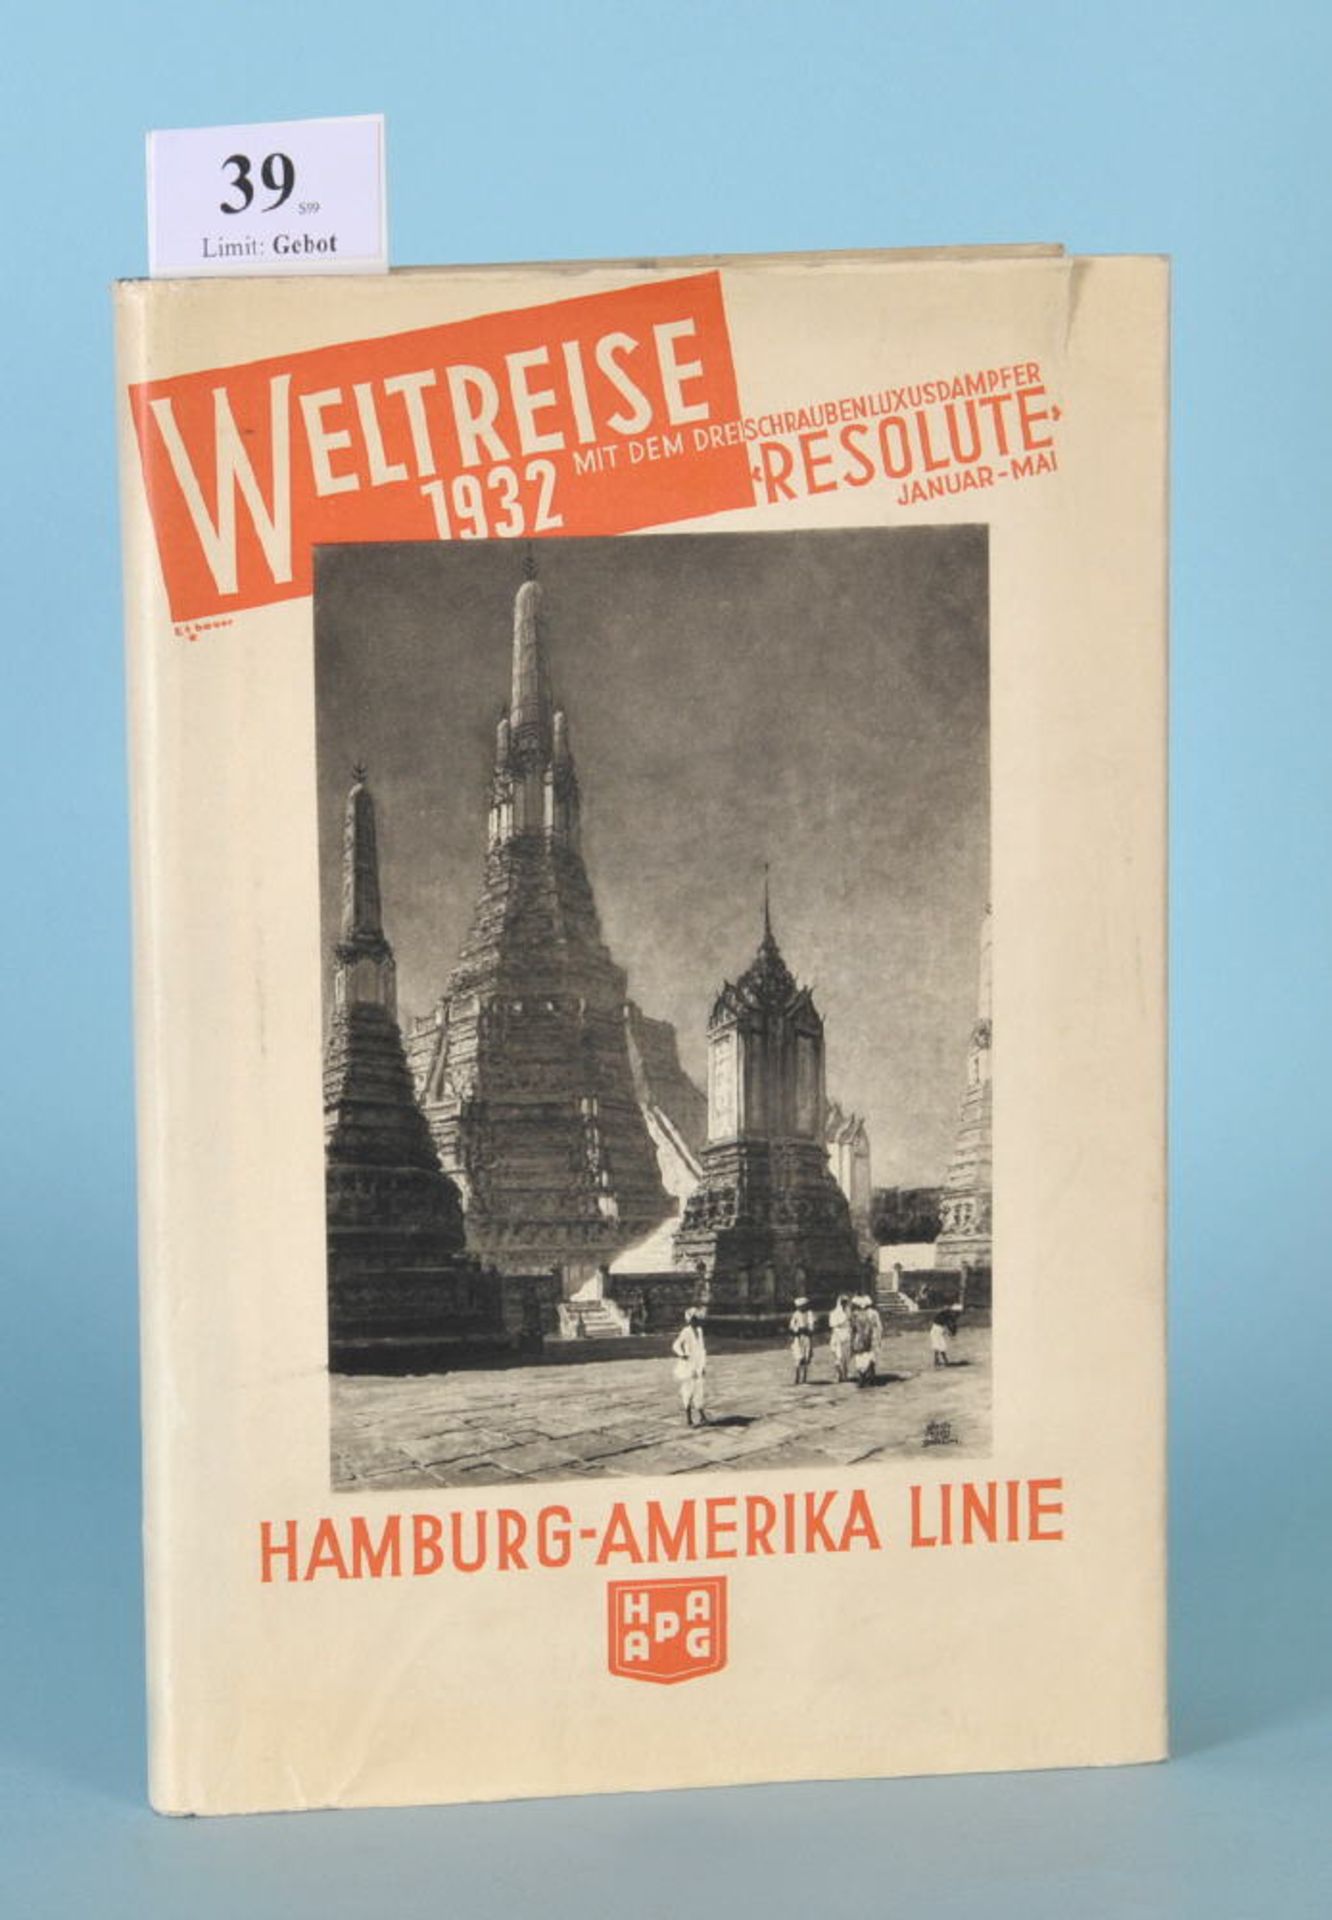 Hapag Weltreise 1932 mit dem Dreischrauben-Luxusdampfer..."...Resolute vom Januar bis Mai",